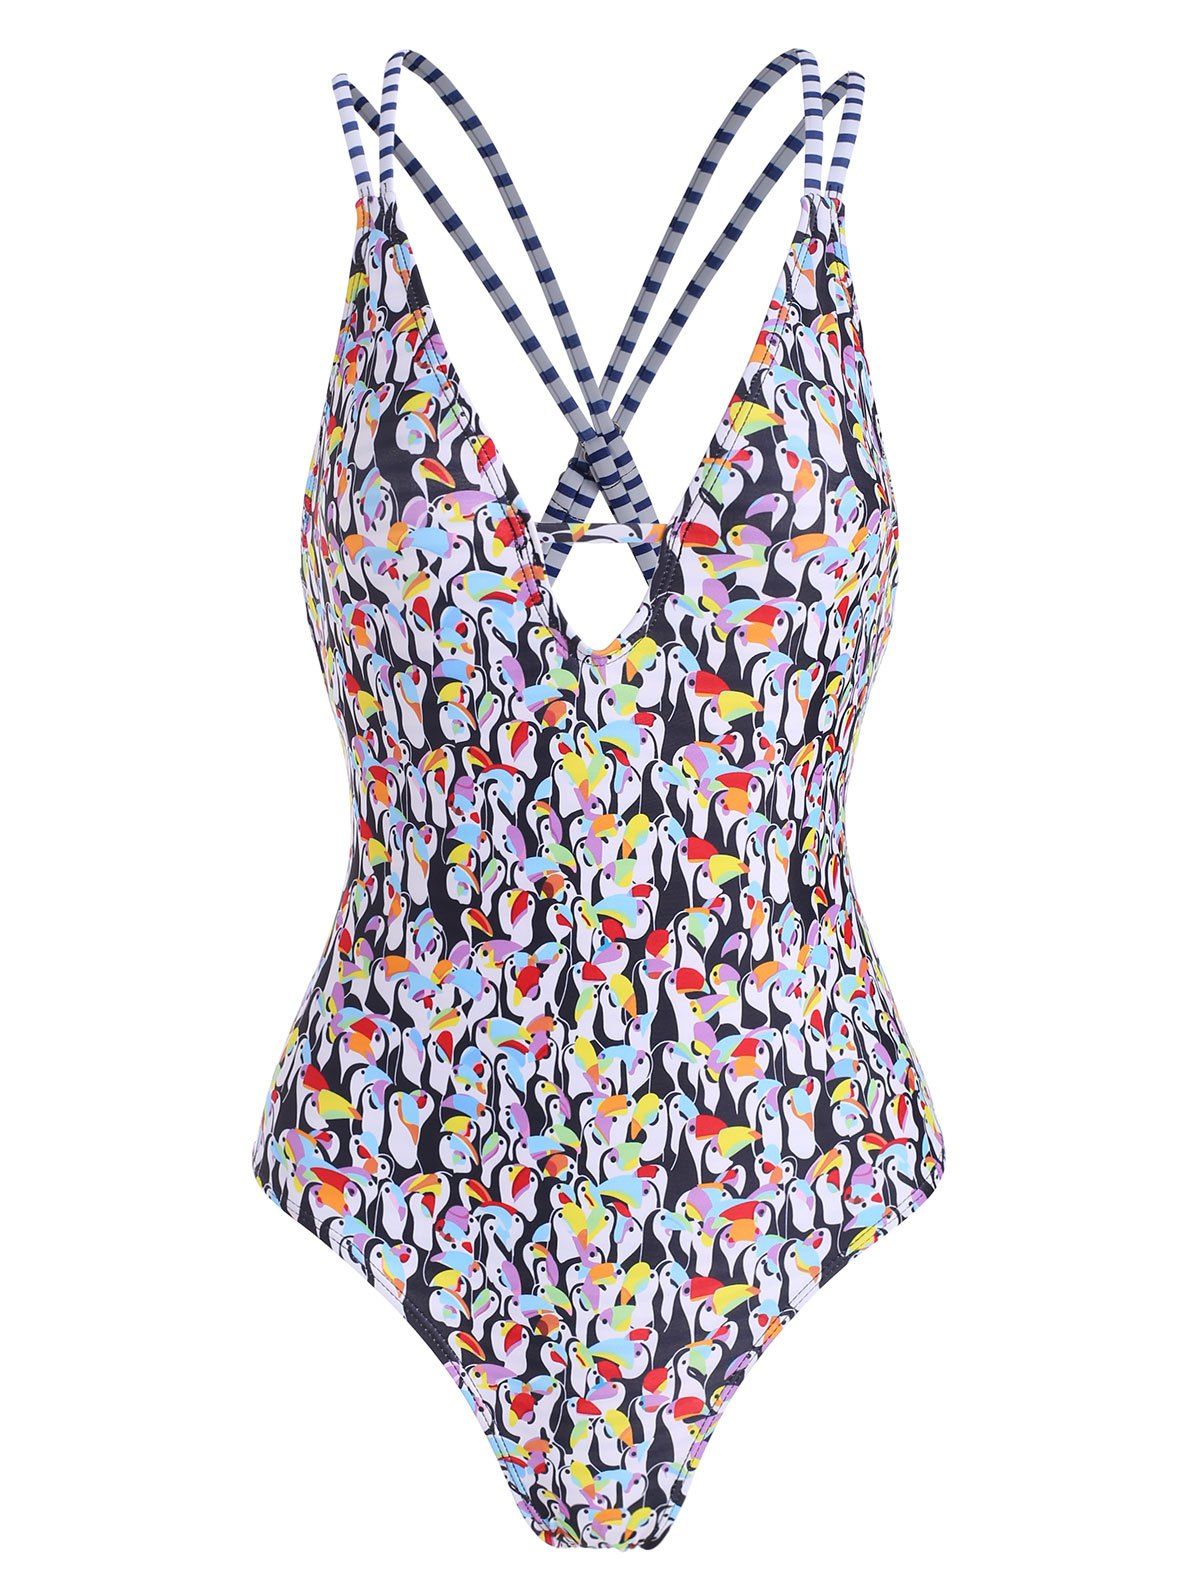 Penguin Print Deep V One-piece Swimsuit - COLORMIX L